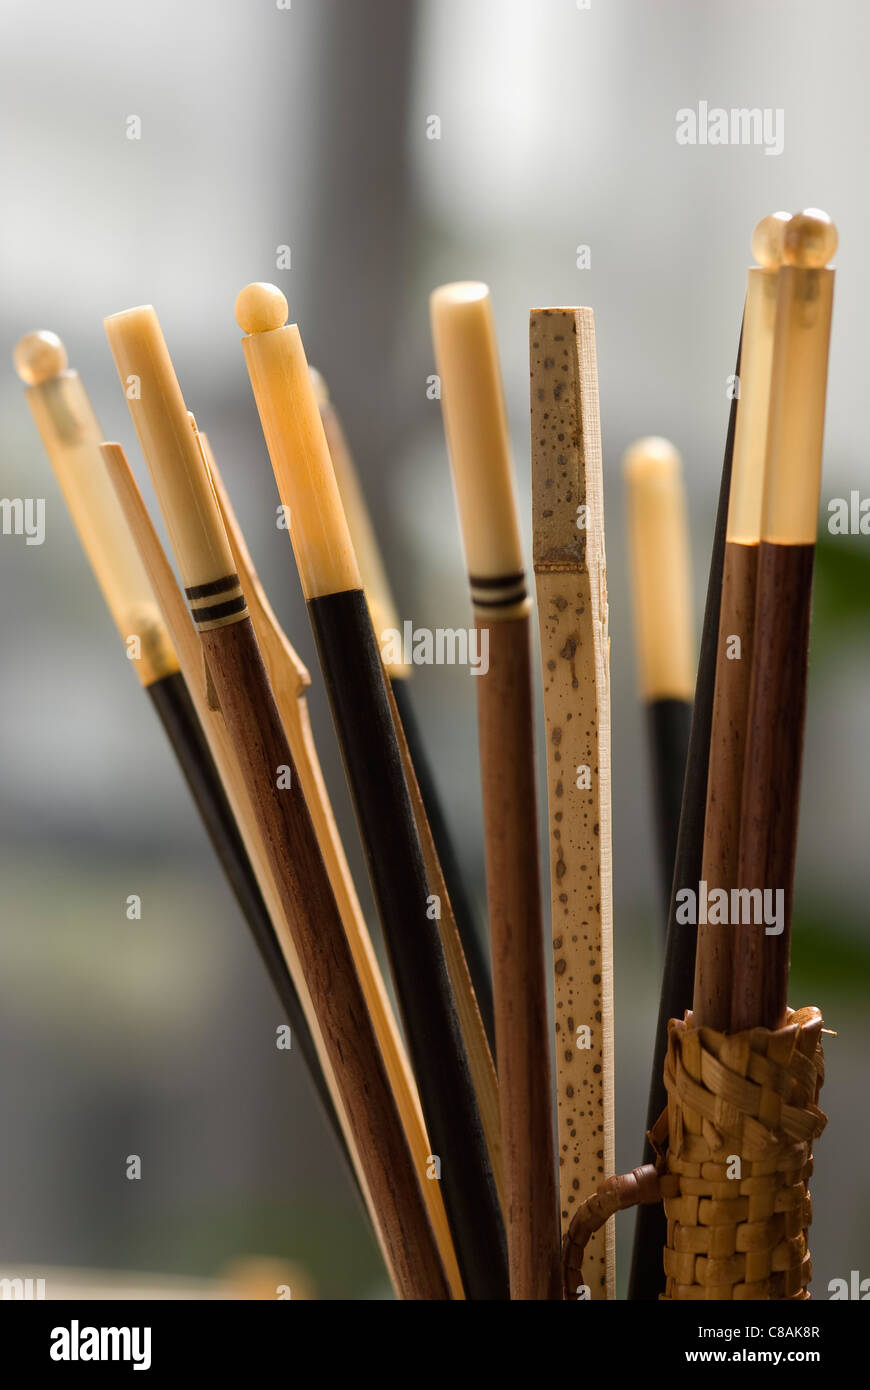 Wooden chopsticks Stock Photo